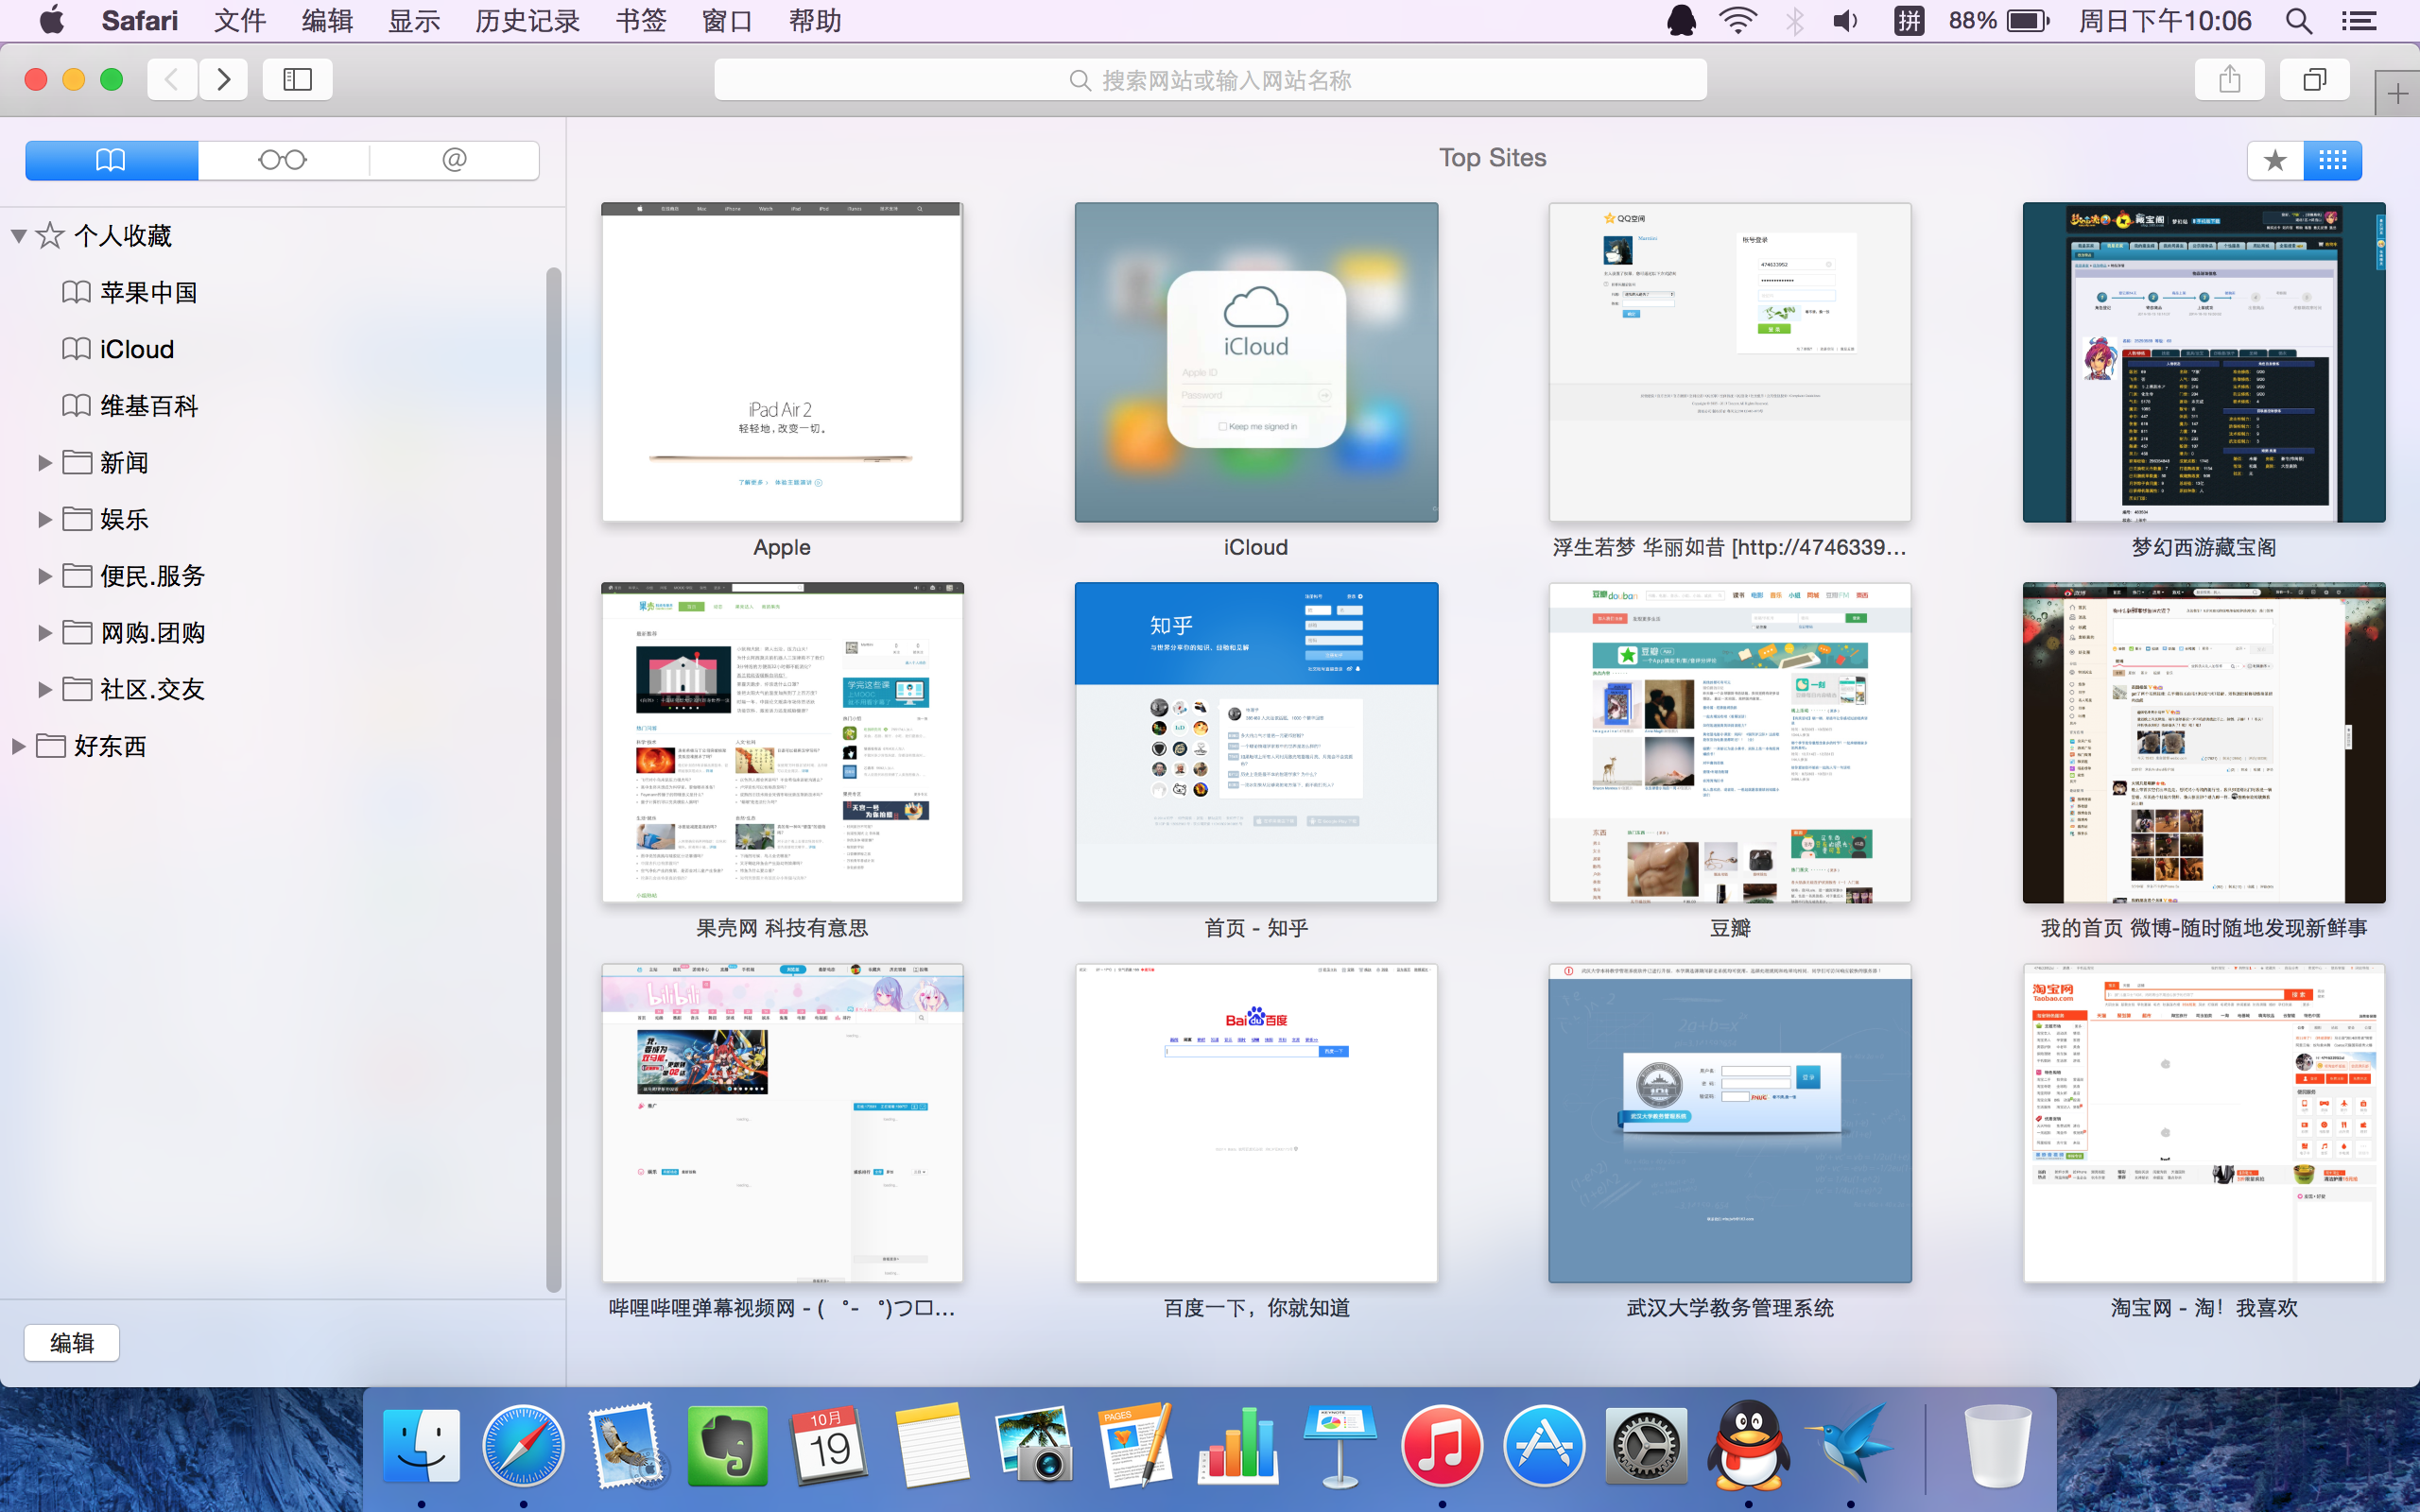 如何评价 OS X Yosemite 的 UI 设计? - 苹果公司